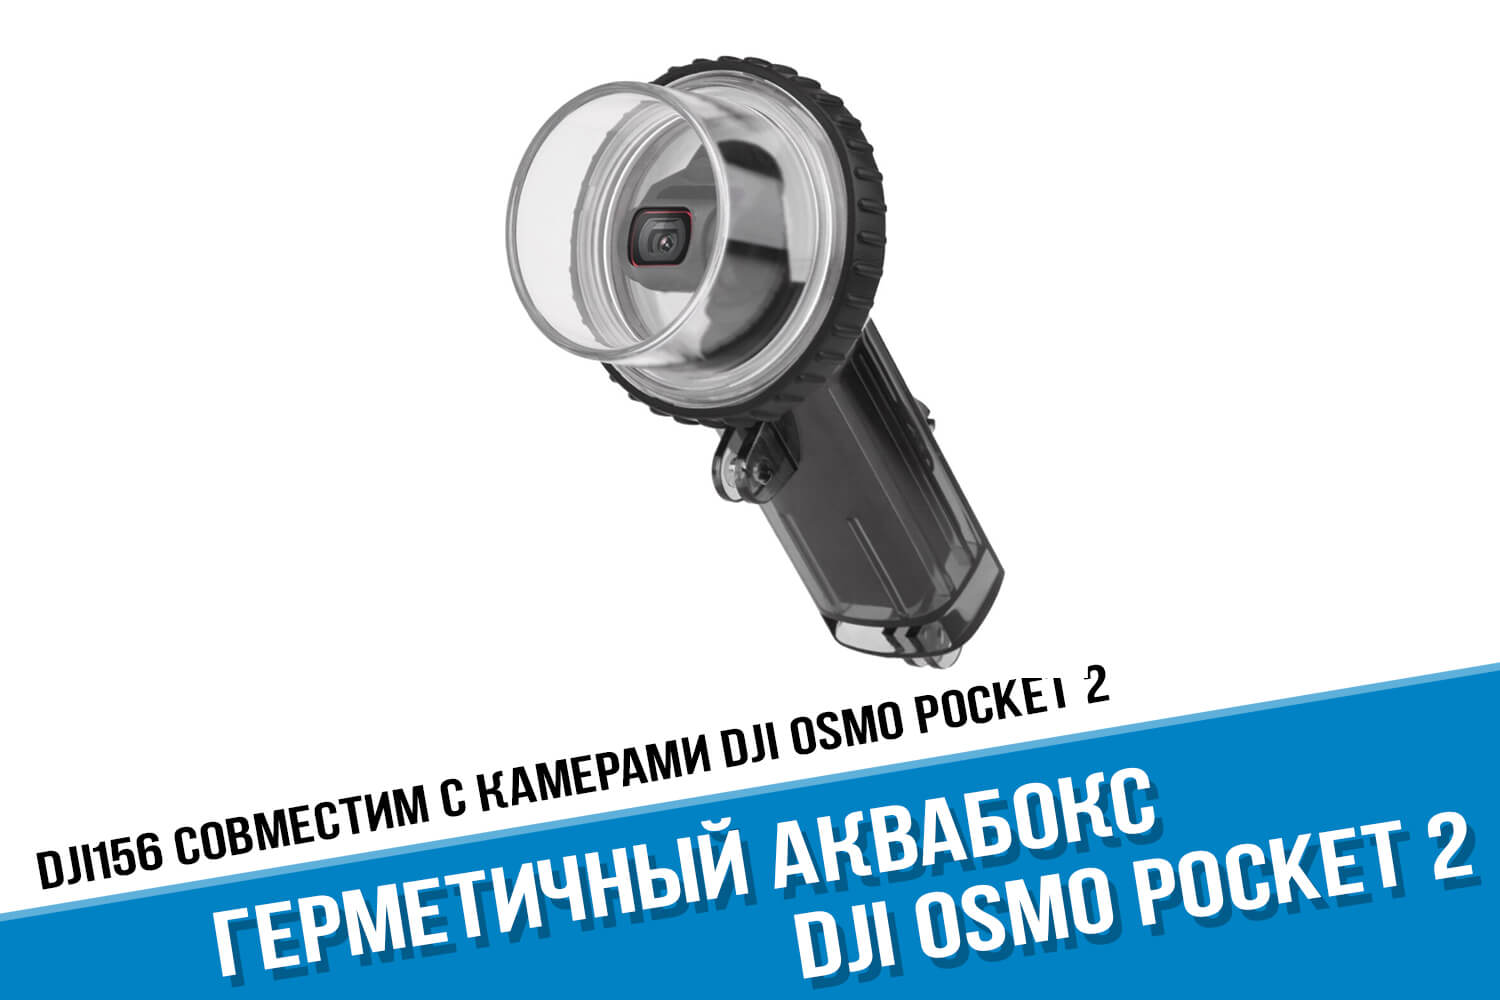 Герметичный бокс для камеры DJI Osmo Pocket 2